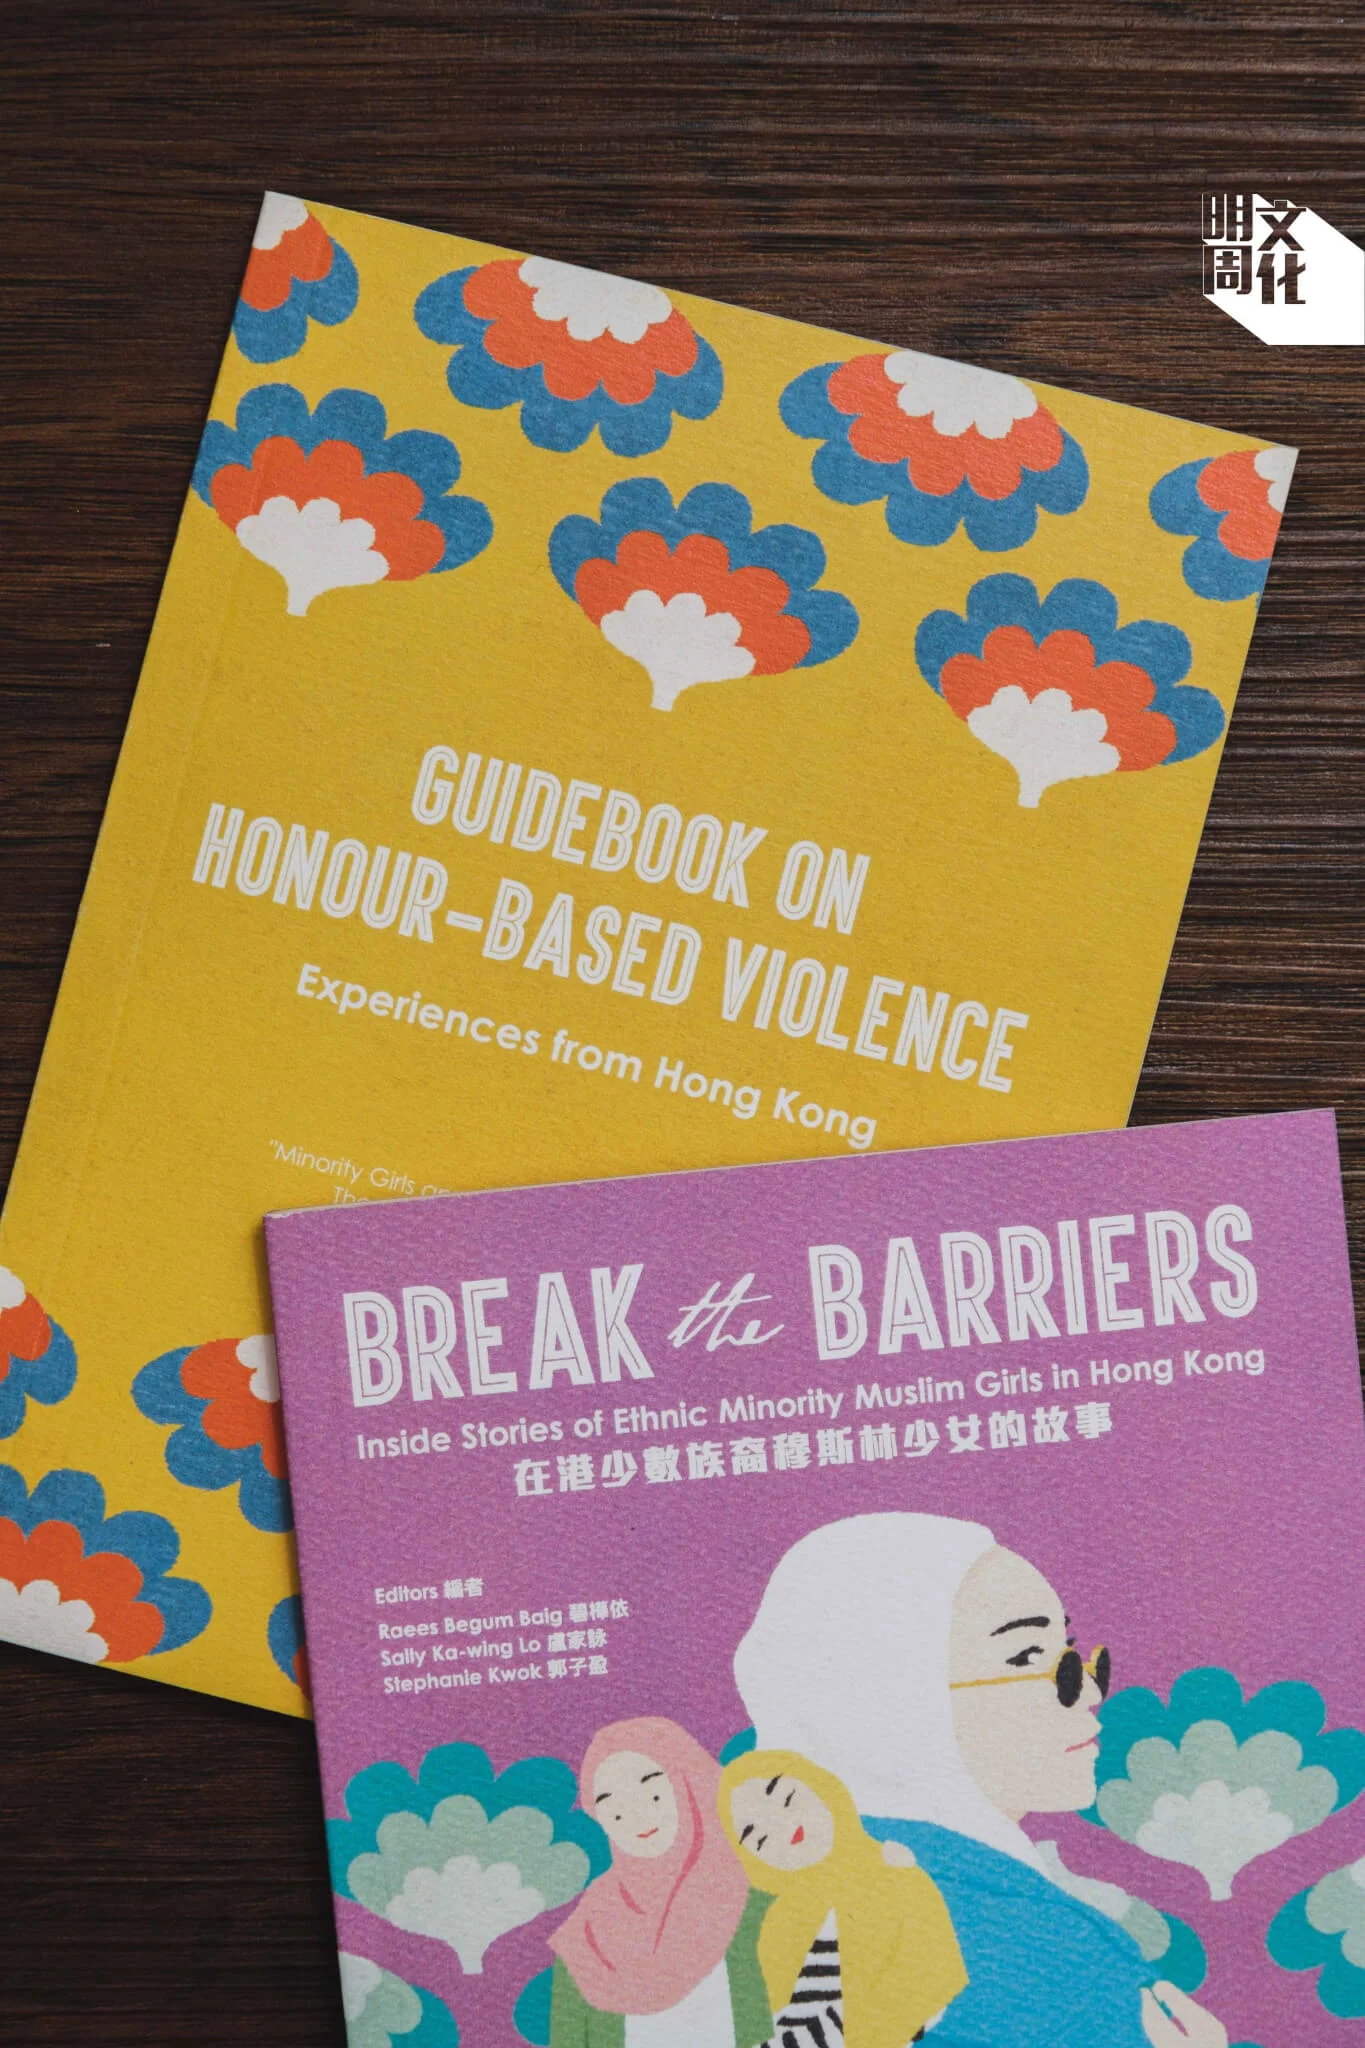 「少數族裔女性與性別公義計劃」曾出版兩本刊物， 分別（上）為一本以社工或行動者為對象的手冊，介定及解釋香港少數族裔女性所面對的與榮譽相關的暴力（Honor -Based Violence）及（下）一由少數族裔女性親述其香港故事的小誌。